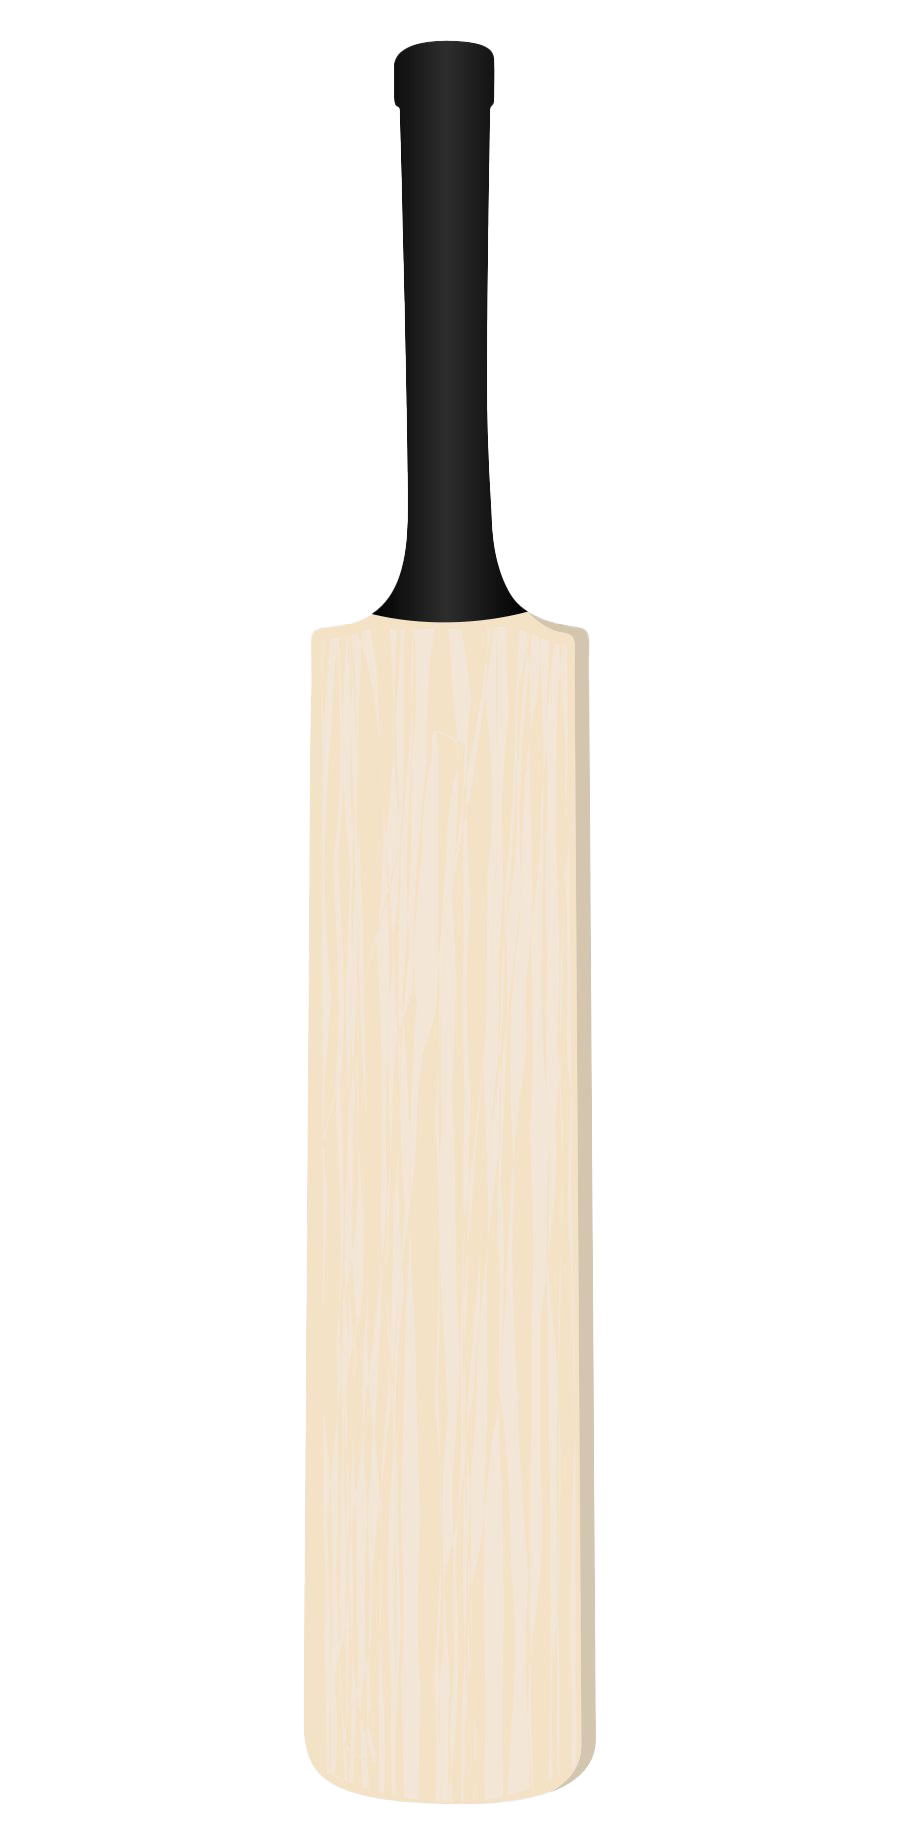 Cricket Bat Vector PNG HD Quality